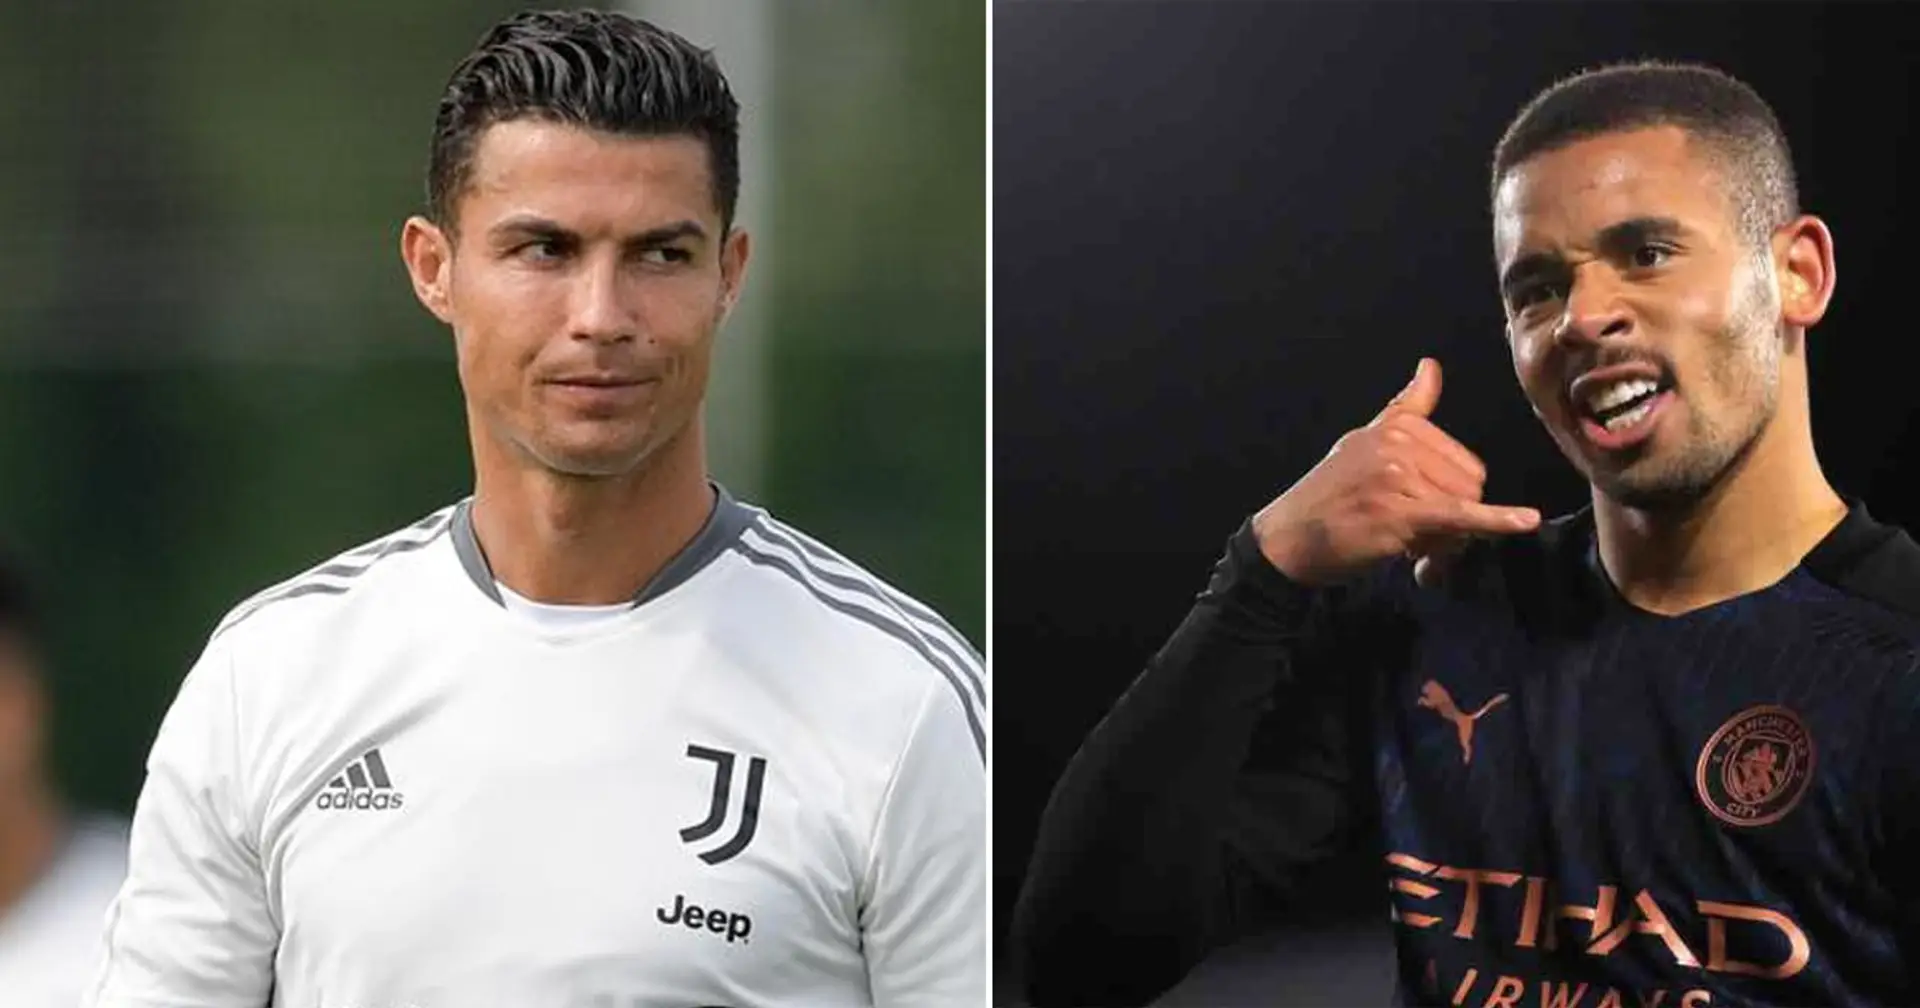 La Juventus fissa il prezzo di Cristiano Ronaldo: una contropartita dal City può sbloccare l'affare